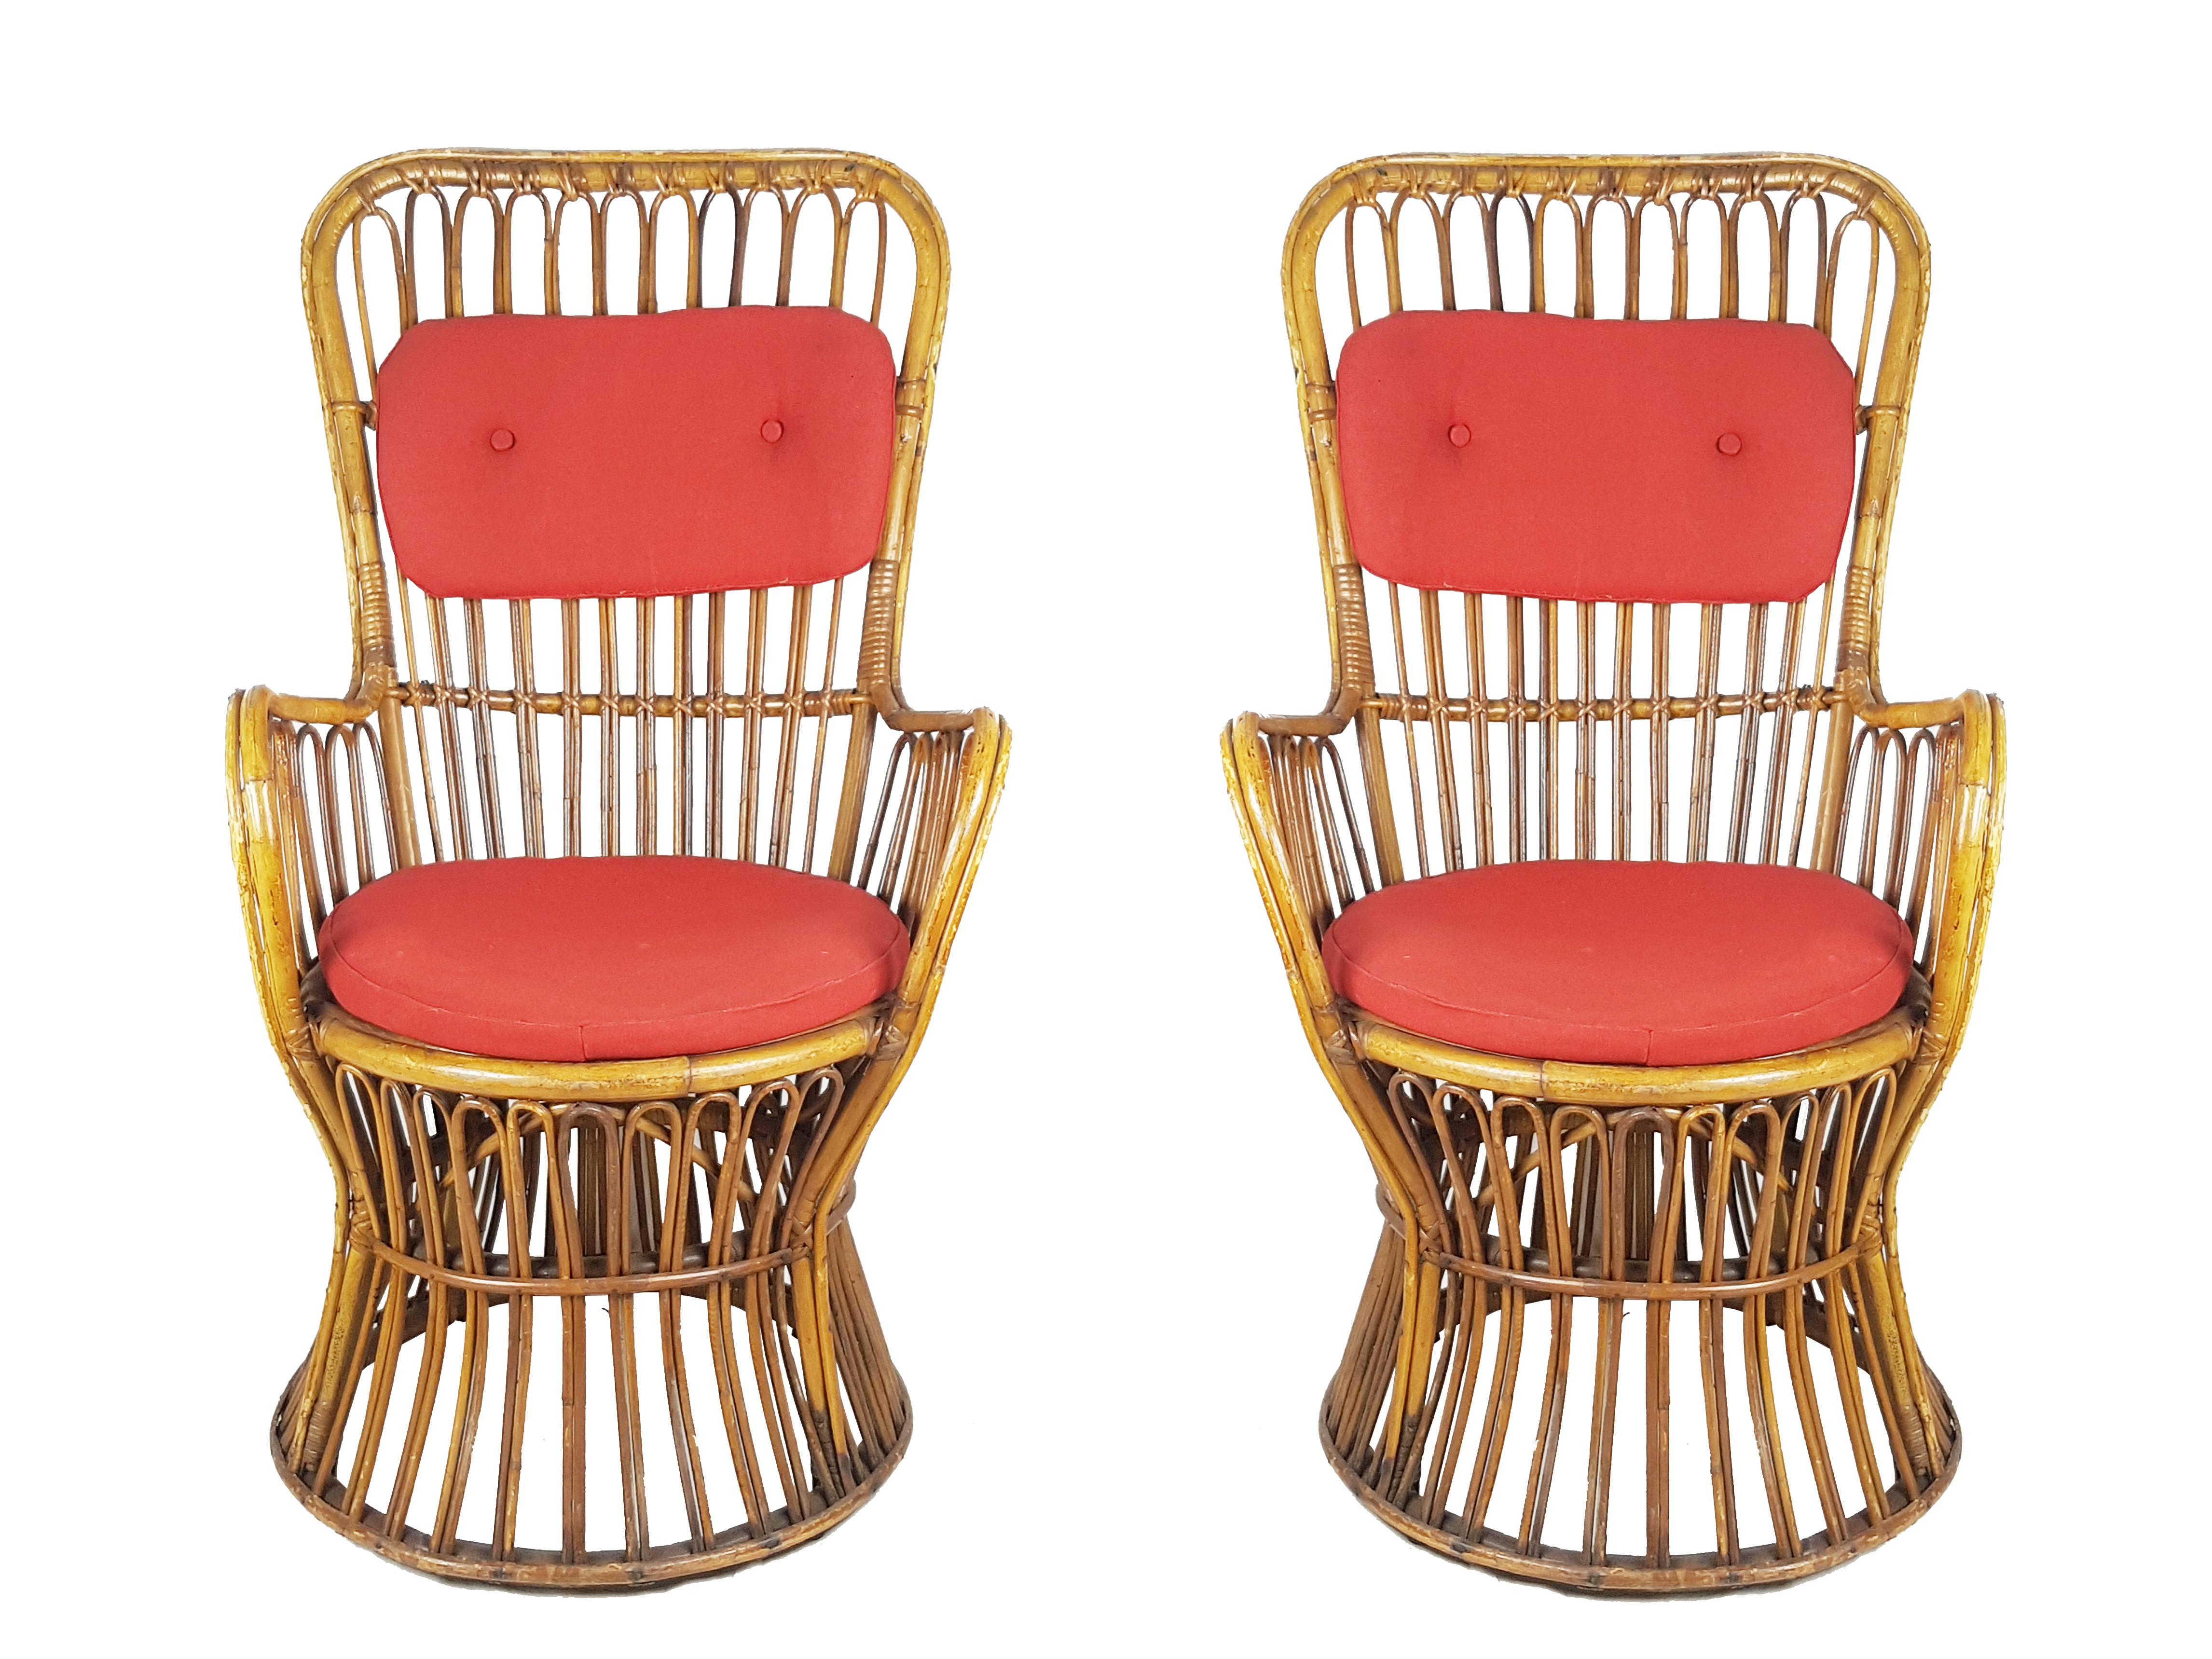 Cette magnifique paire de fauteuils en rotin et en jonc a été produite en Italie à la fin des années 1950. Leur haute qualité et leur design raffiné rappellent des exemples similaires de la production contemporaine d'Azucena. Les chaises sont dotées